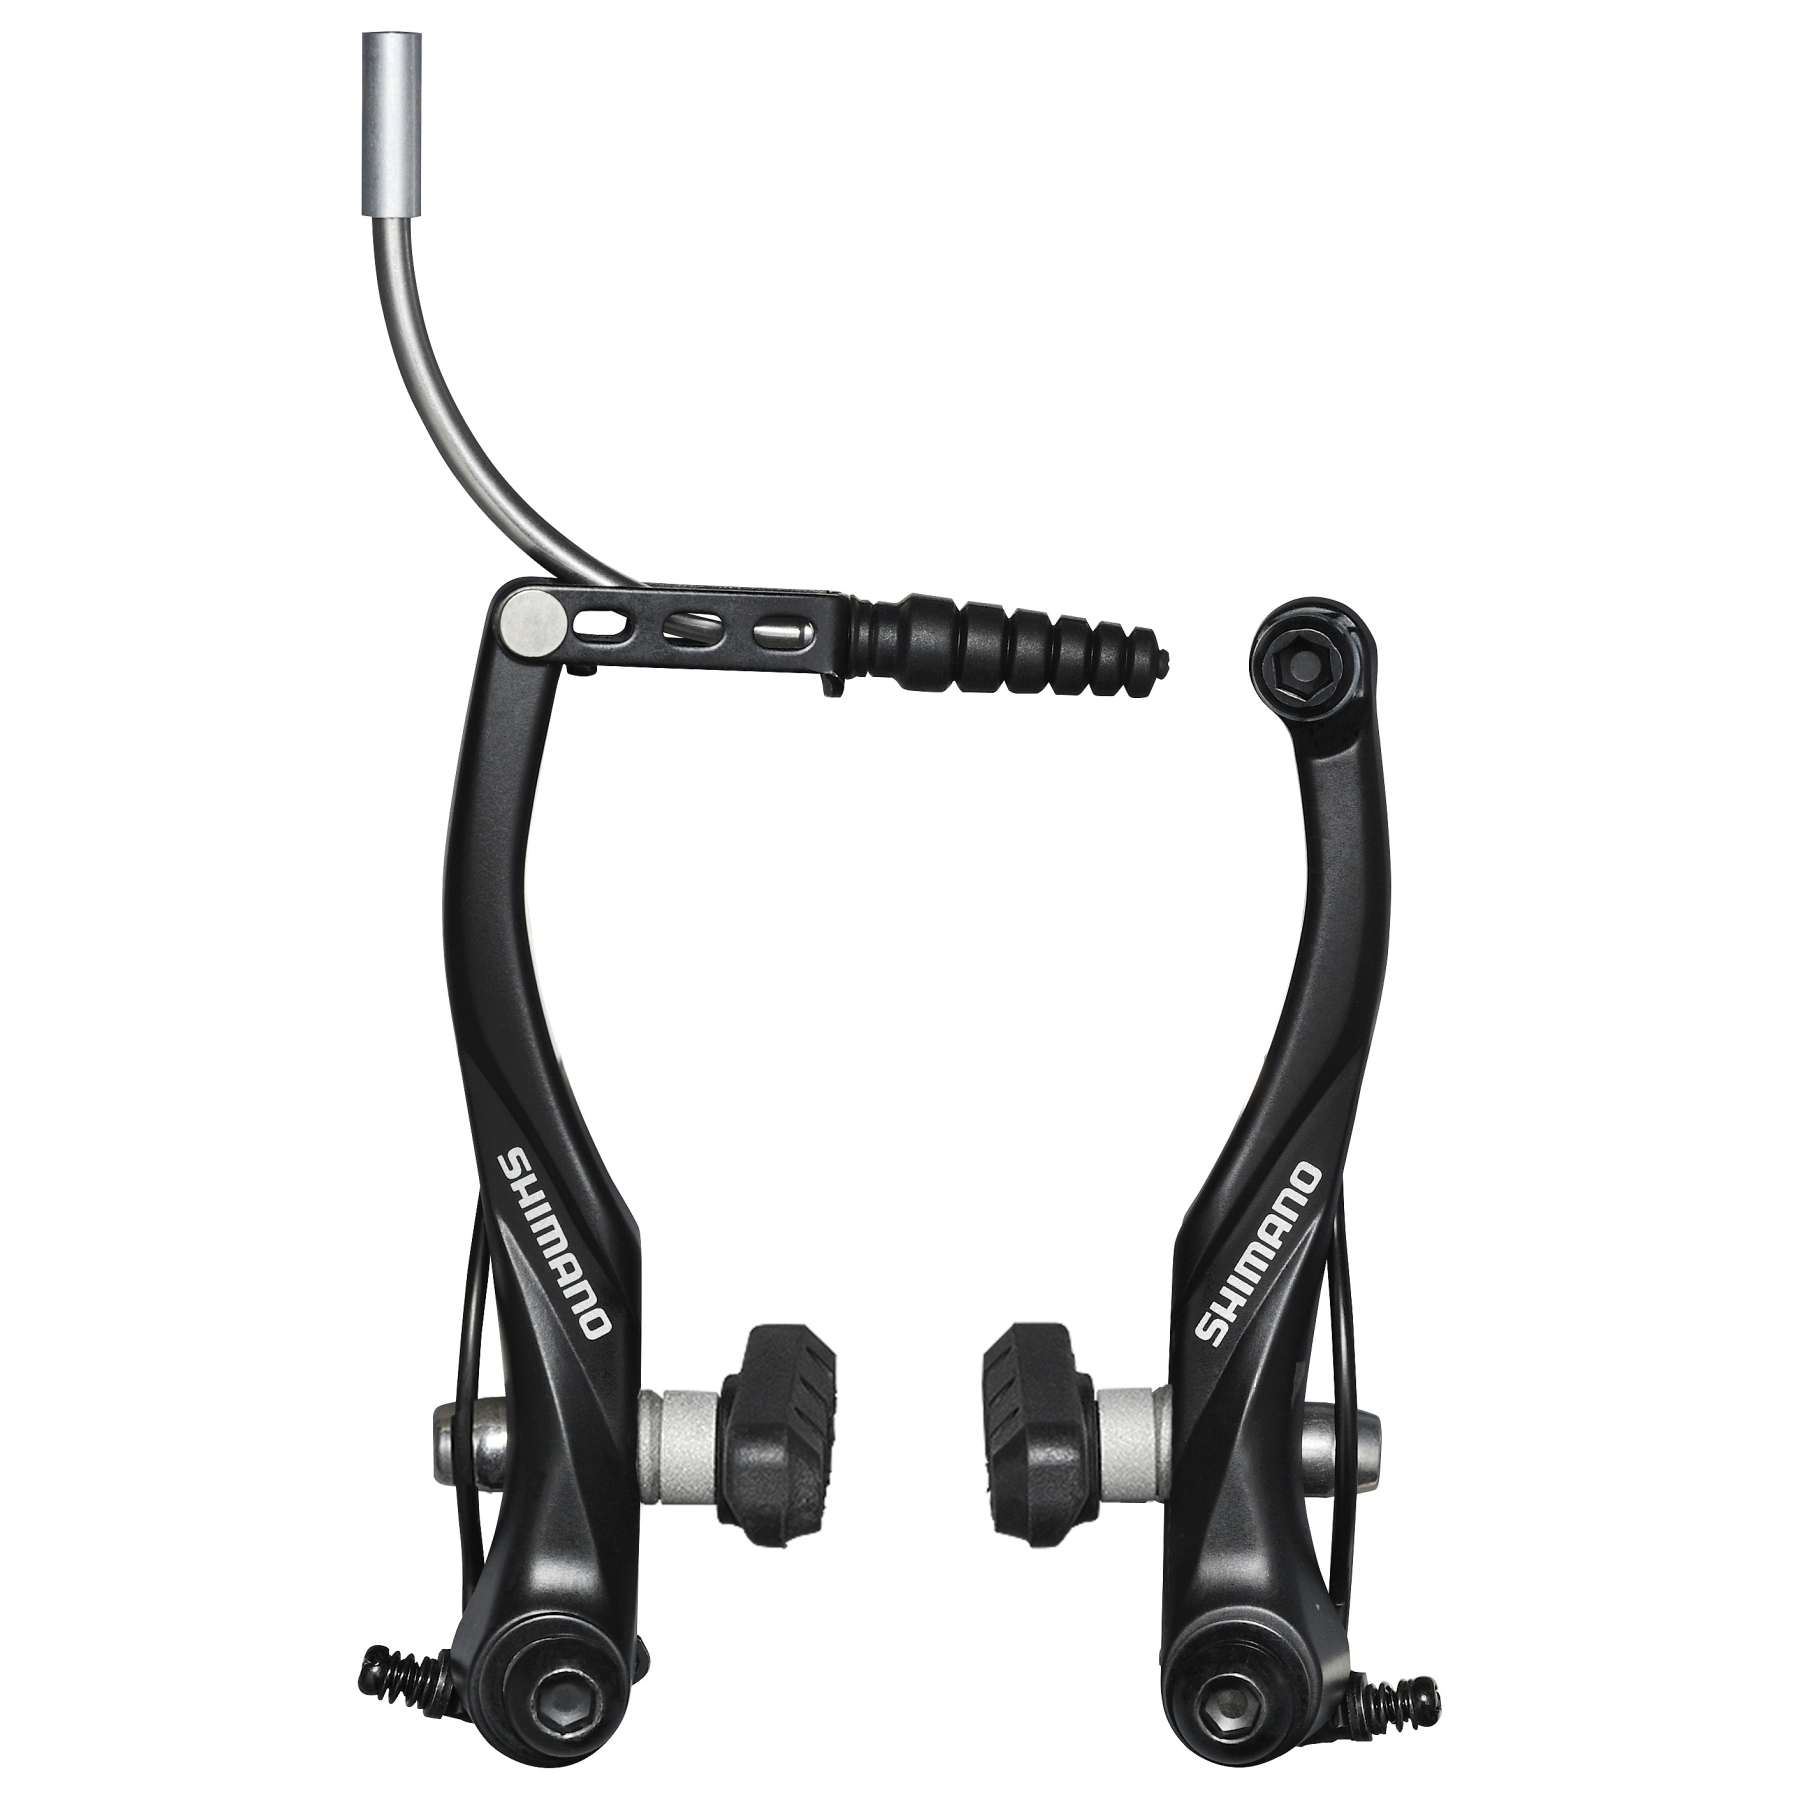 Produktbild von Shimano Alivio Trekking BR-T4000 V-Brake Felgenbremse - HR - schwarz